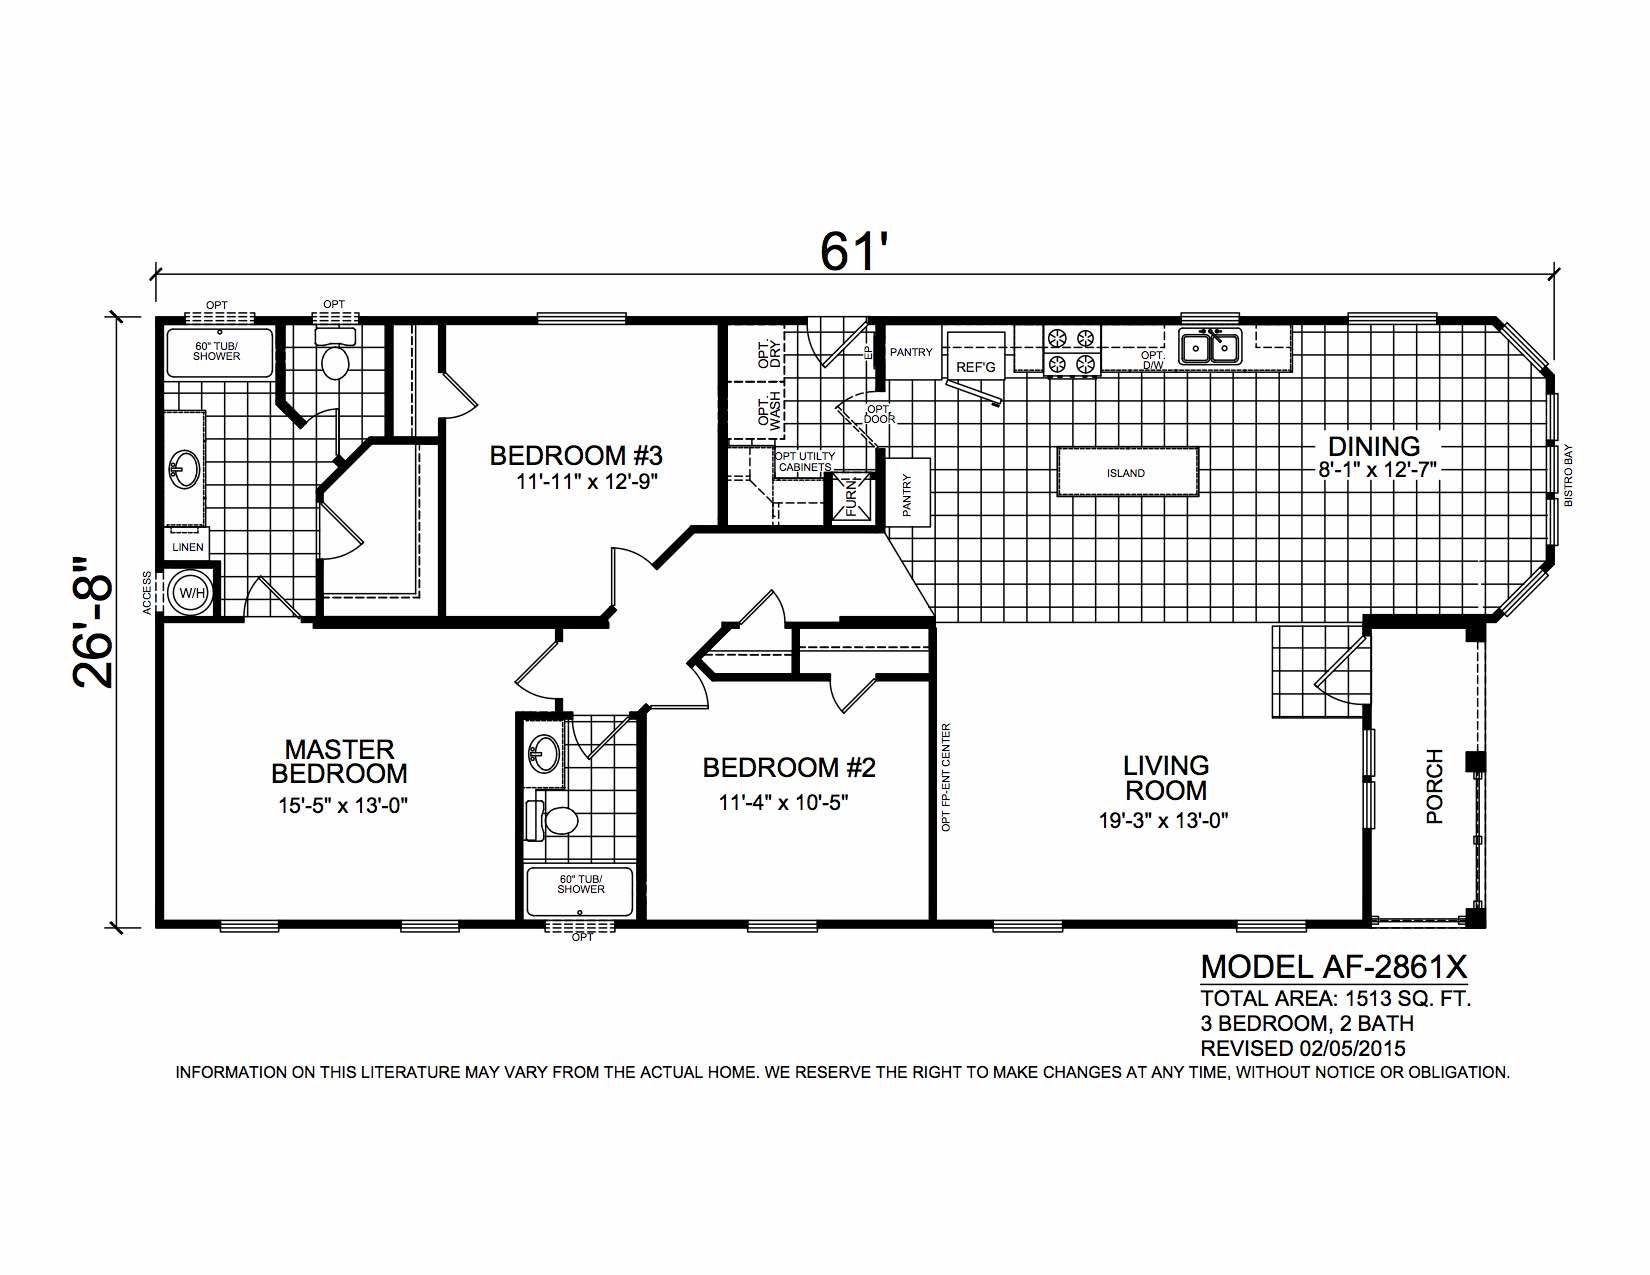 Homes Direct Modular Homes - Model AF2861X - Floorplan